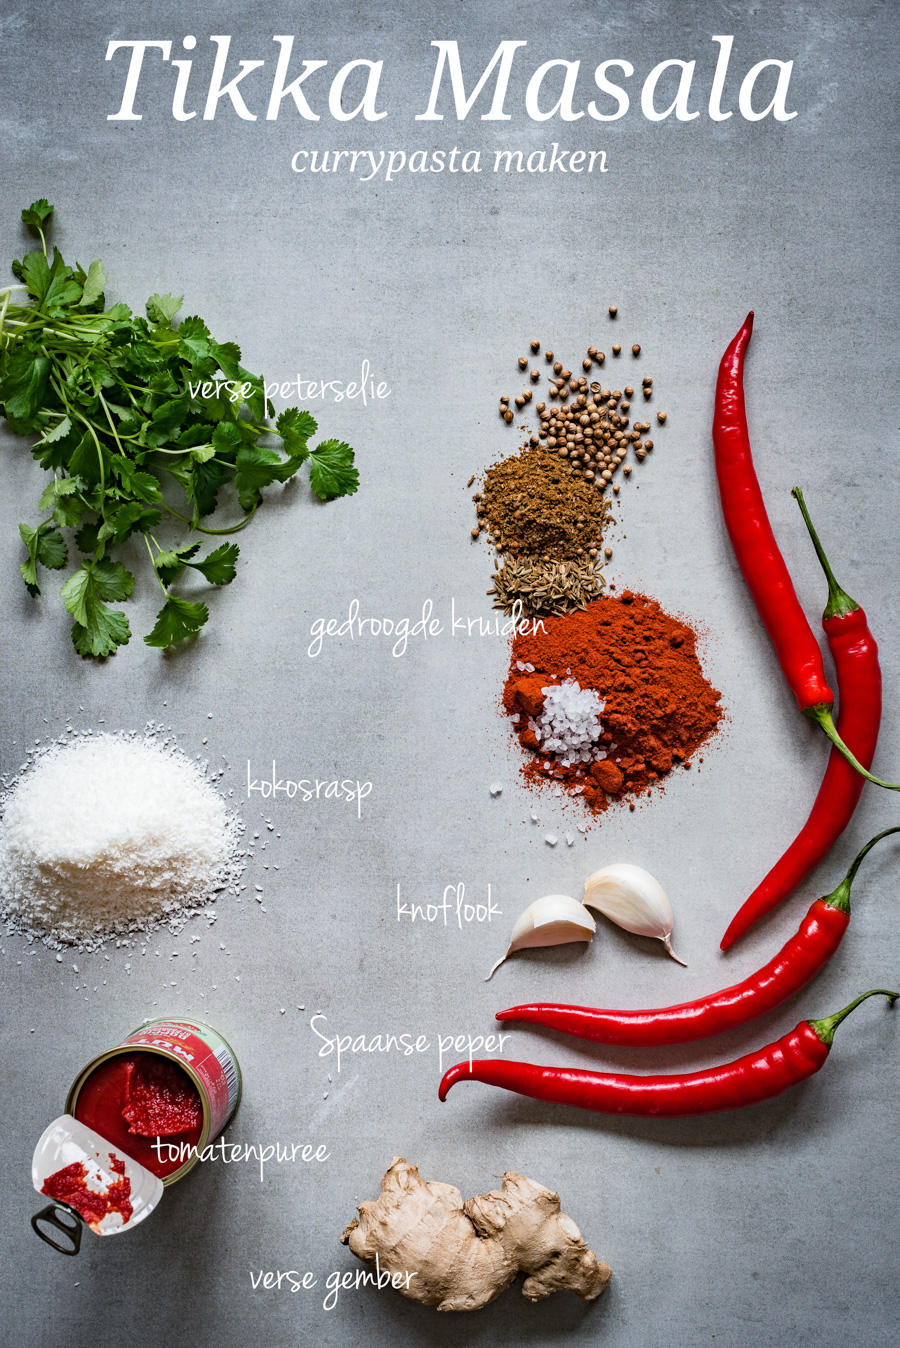 Afbeelding van alle kruiden en specerijen die nodig zijn om de tikka masala currypasta te maken